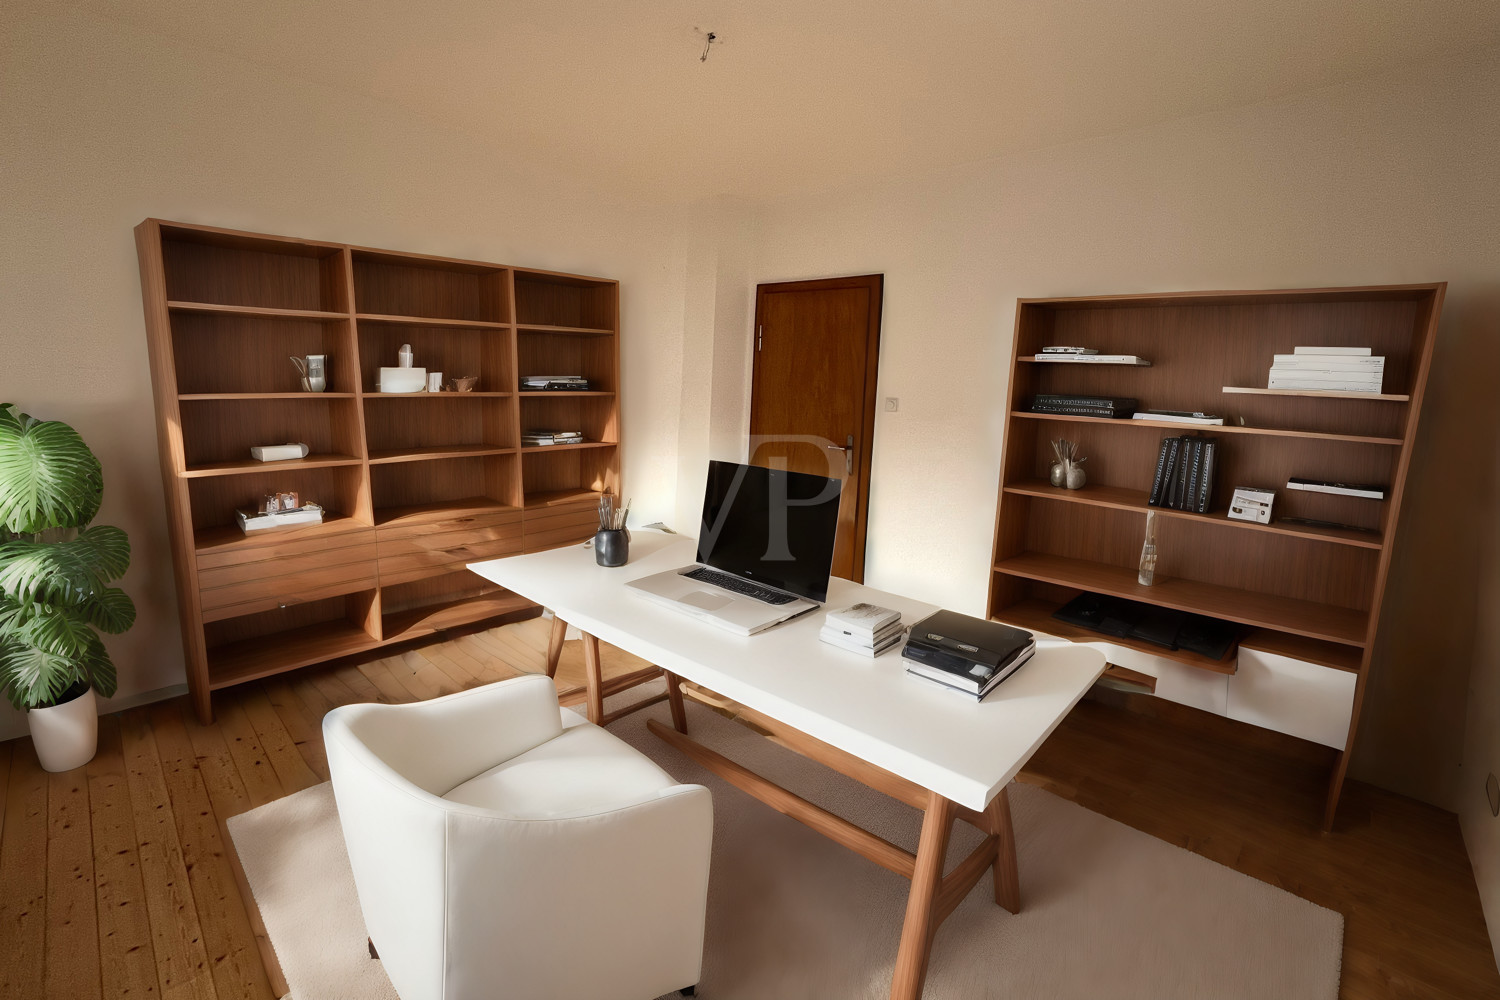 Mögliche Möblierung - Fexible Nutzung als Büro oder Gästezimmer